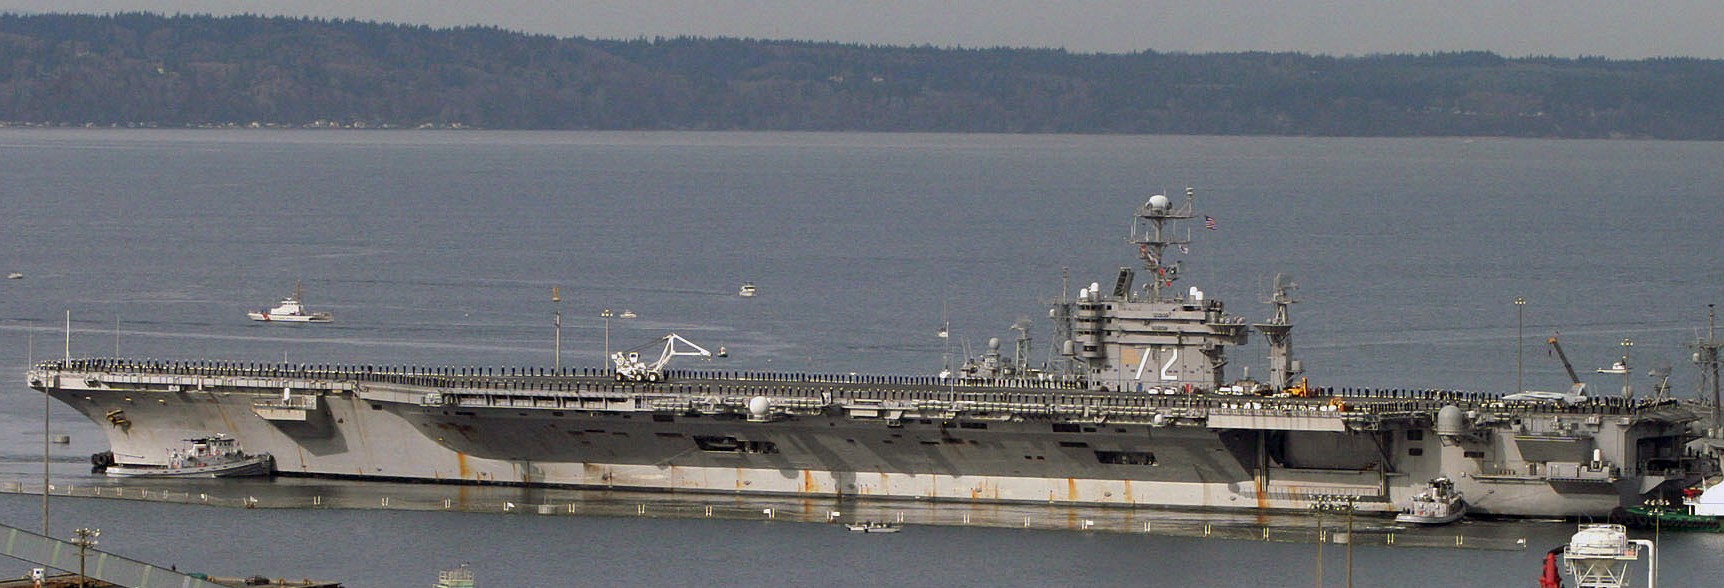 cvn-72 uss abraham lincoln nimitz class aircraft carrier us navy everett washington 91